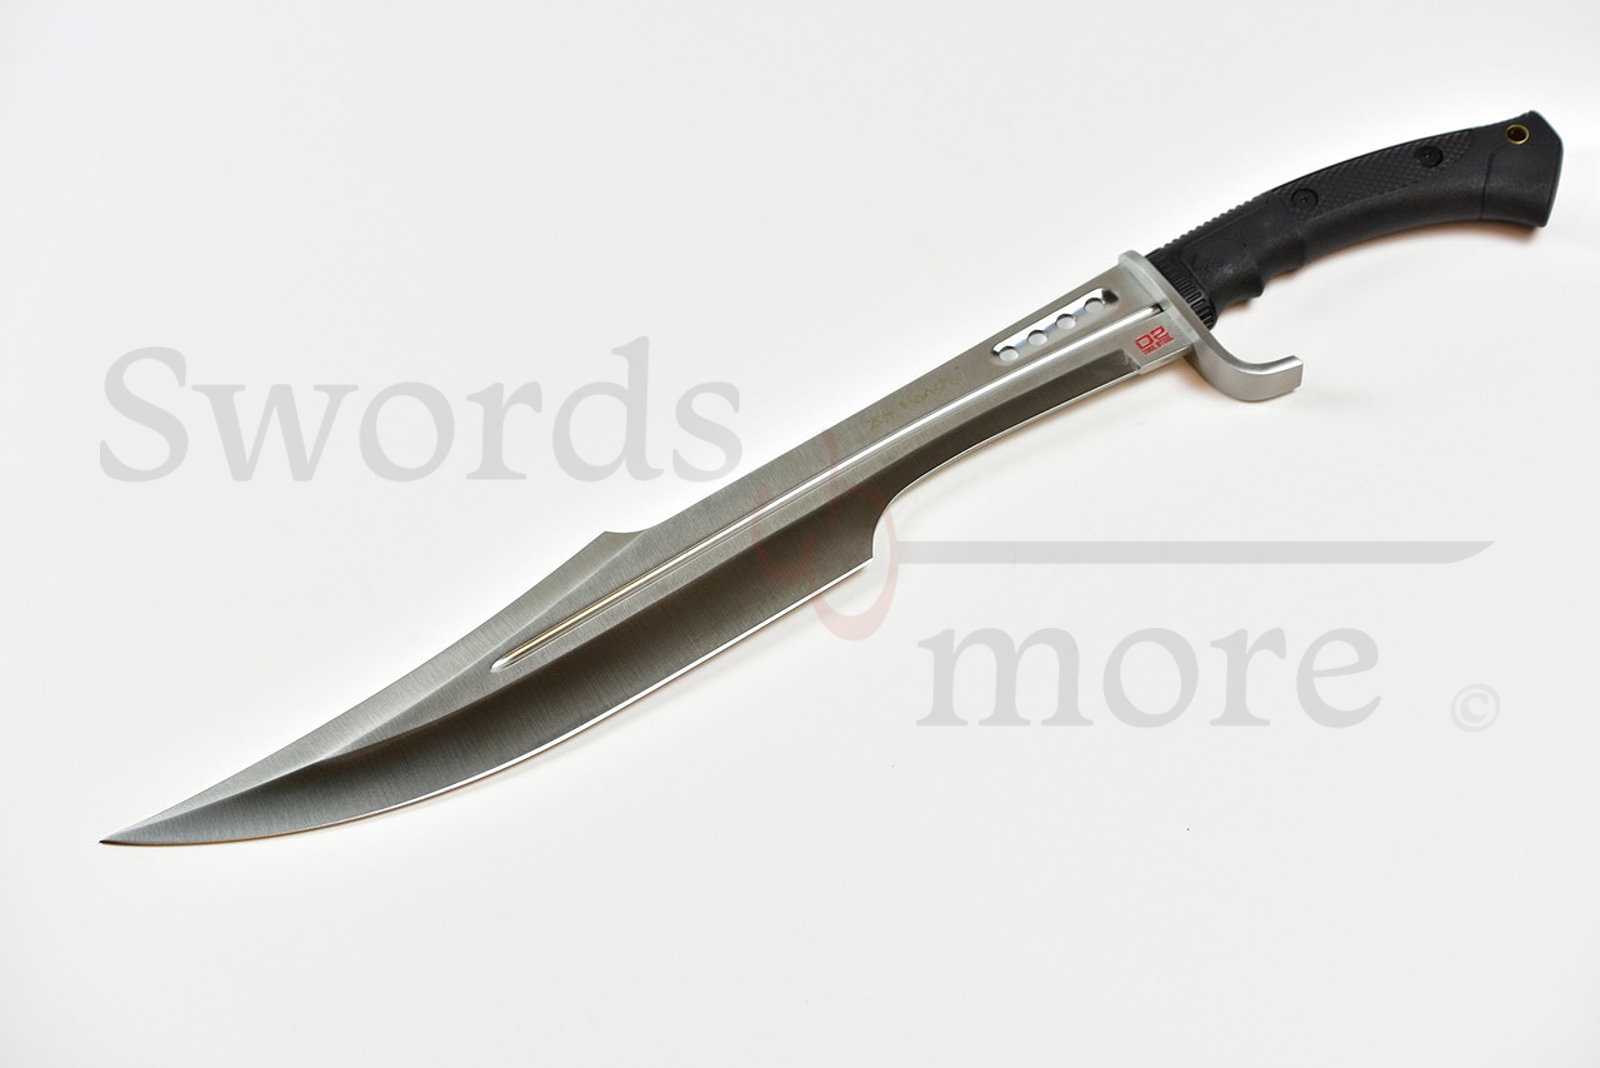 Honshu Spartan Sword with D2 Steel